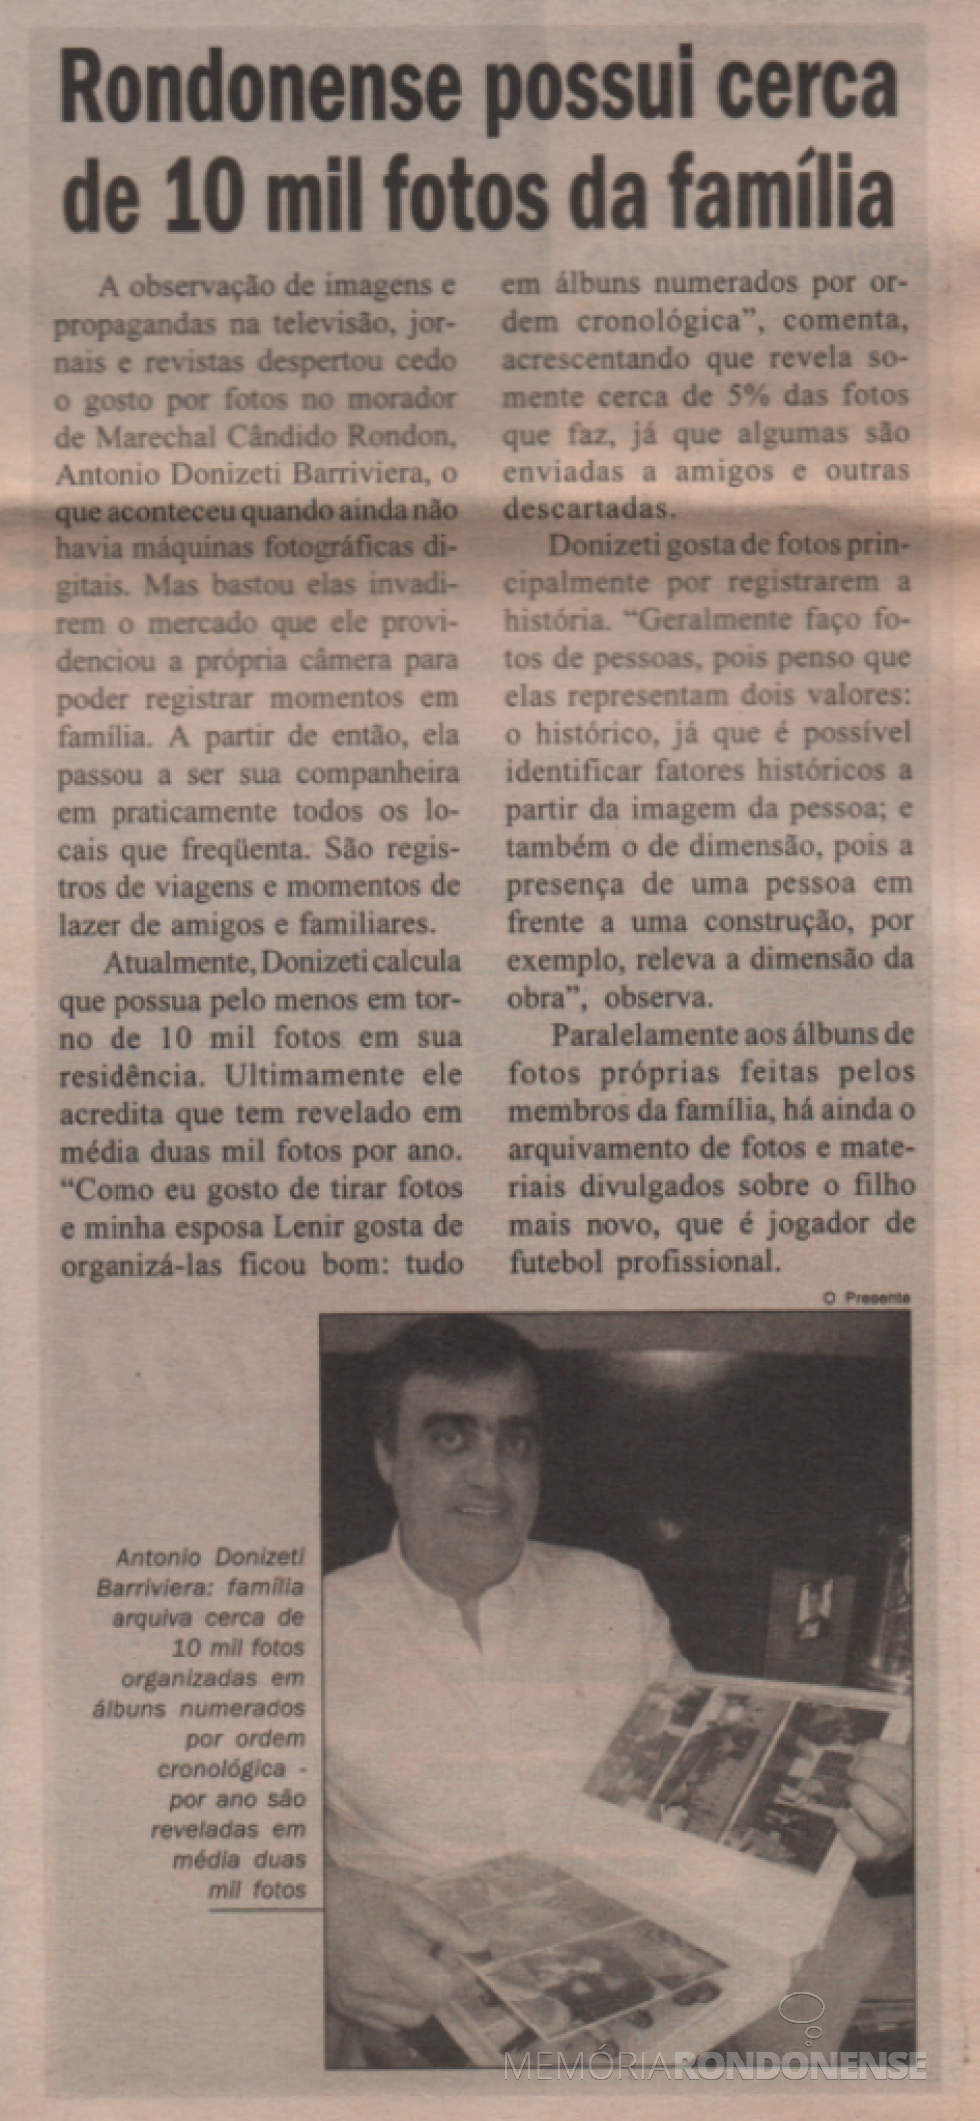 || Recorte do jornal O Presente sobre a paixão do rondonense Donizete Barraviera pela fotografia, em novembro de 2008.
Imagem: Acervo do periódico - FOTO 6 -